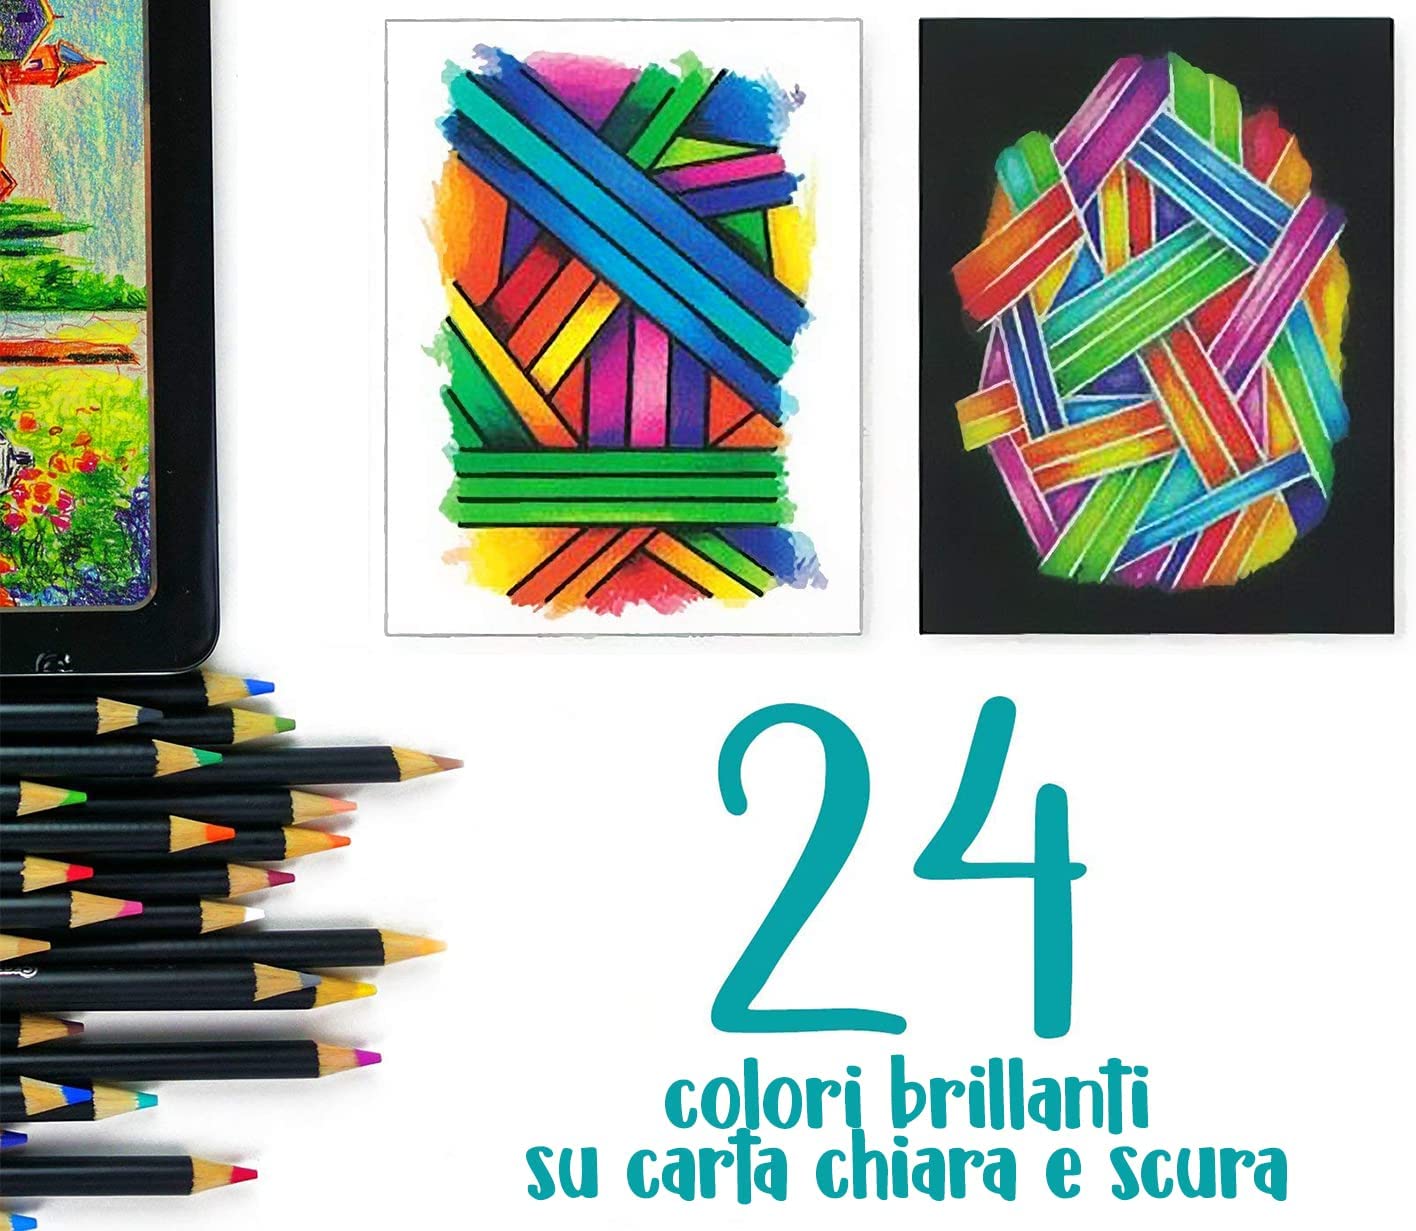 24 Matite colorate Crayola Signature